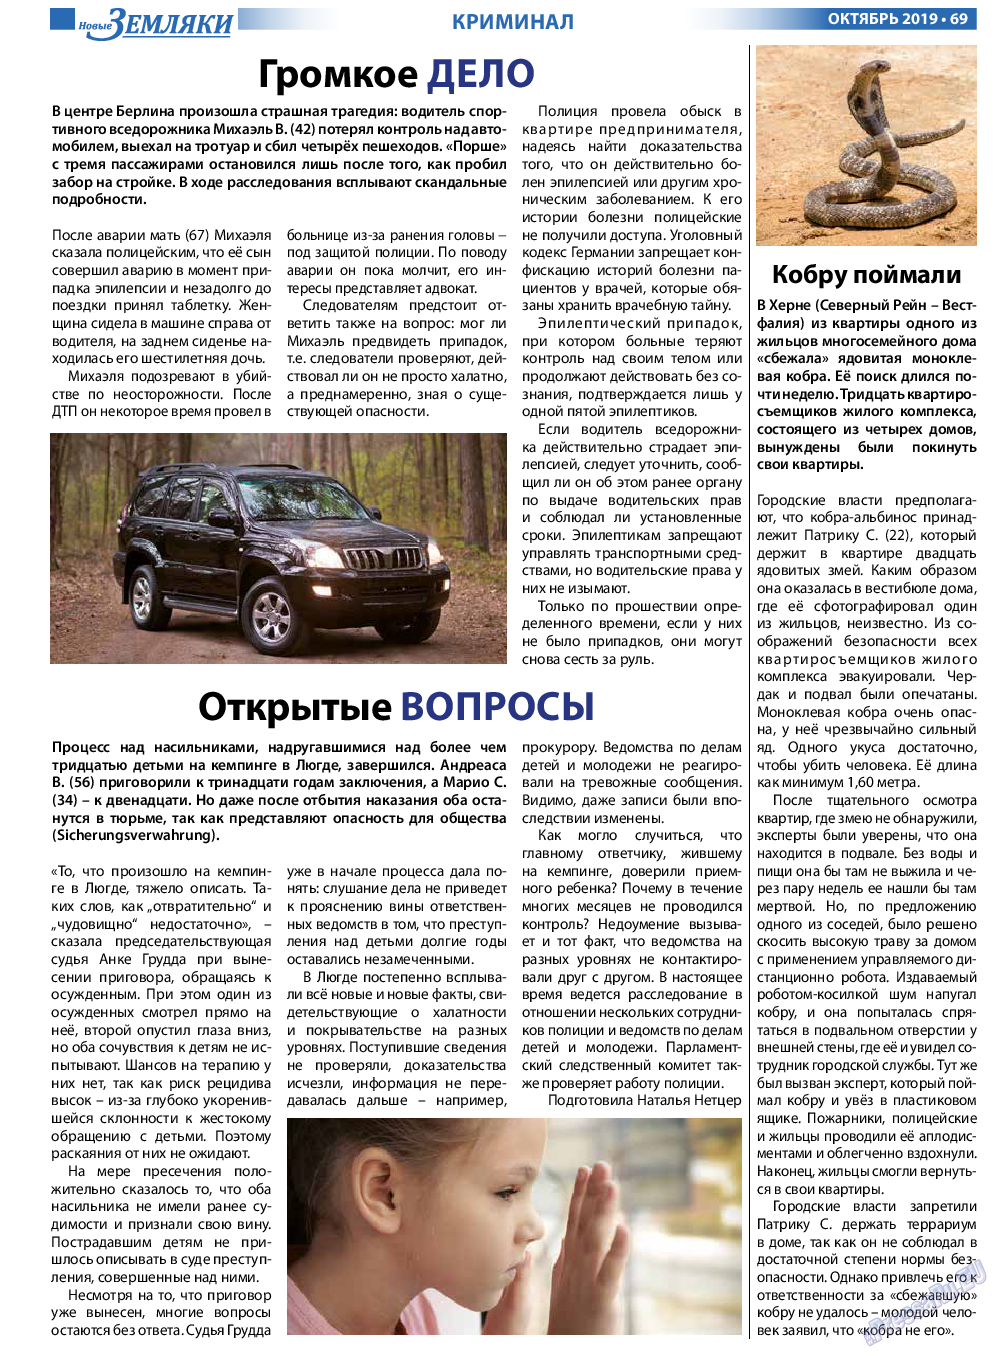 Новые Земляки, газета. 2019 №10 стр.69